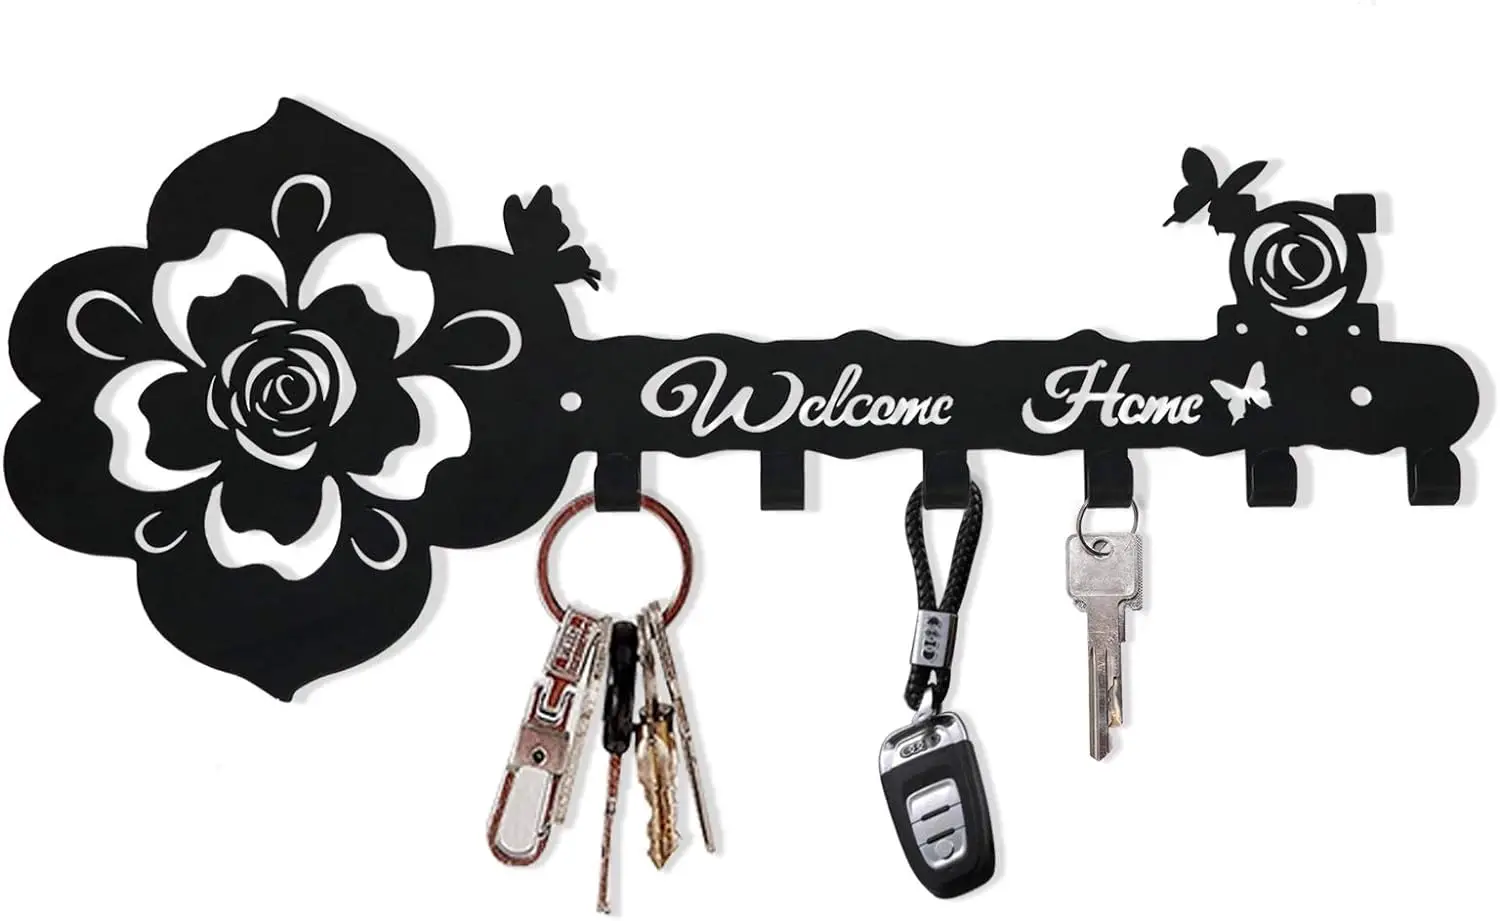 

Крючки для ключей, настенный декоративный держатель для ключей, домашний декор, Черная Вешалка для входа, добро пожаловать в дом, вешалка для ключей, настенные вешалки